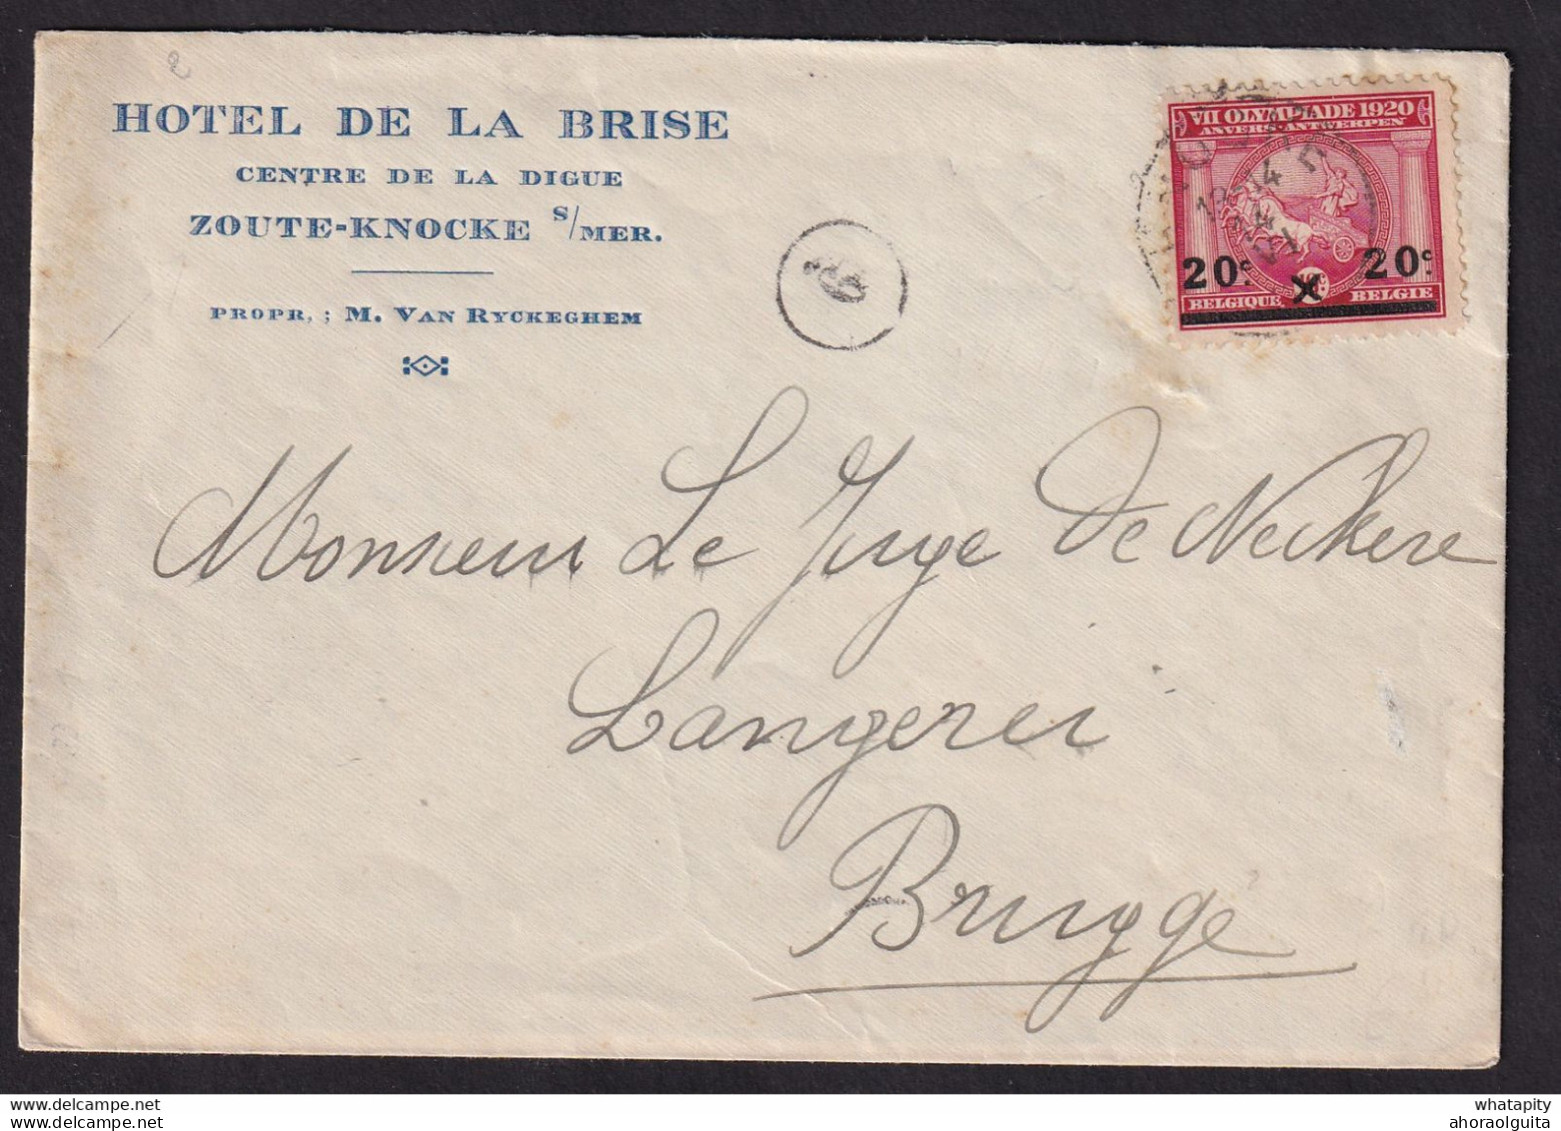 DDBB 577 - Enveloppe Illustrée TP Jeux Olympiques KNOKKE 1921 Vers BRUGGE - Entete Et Gravure Hotel De La Brise, Digue - Sommer 1920: Antwerpen